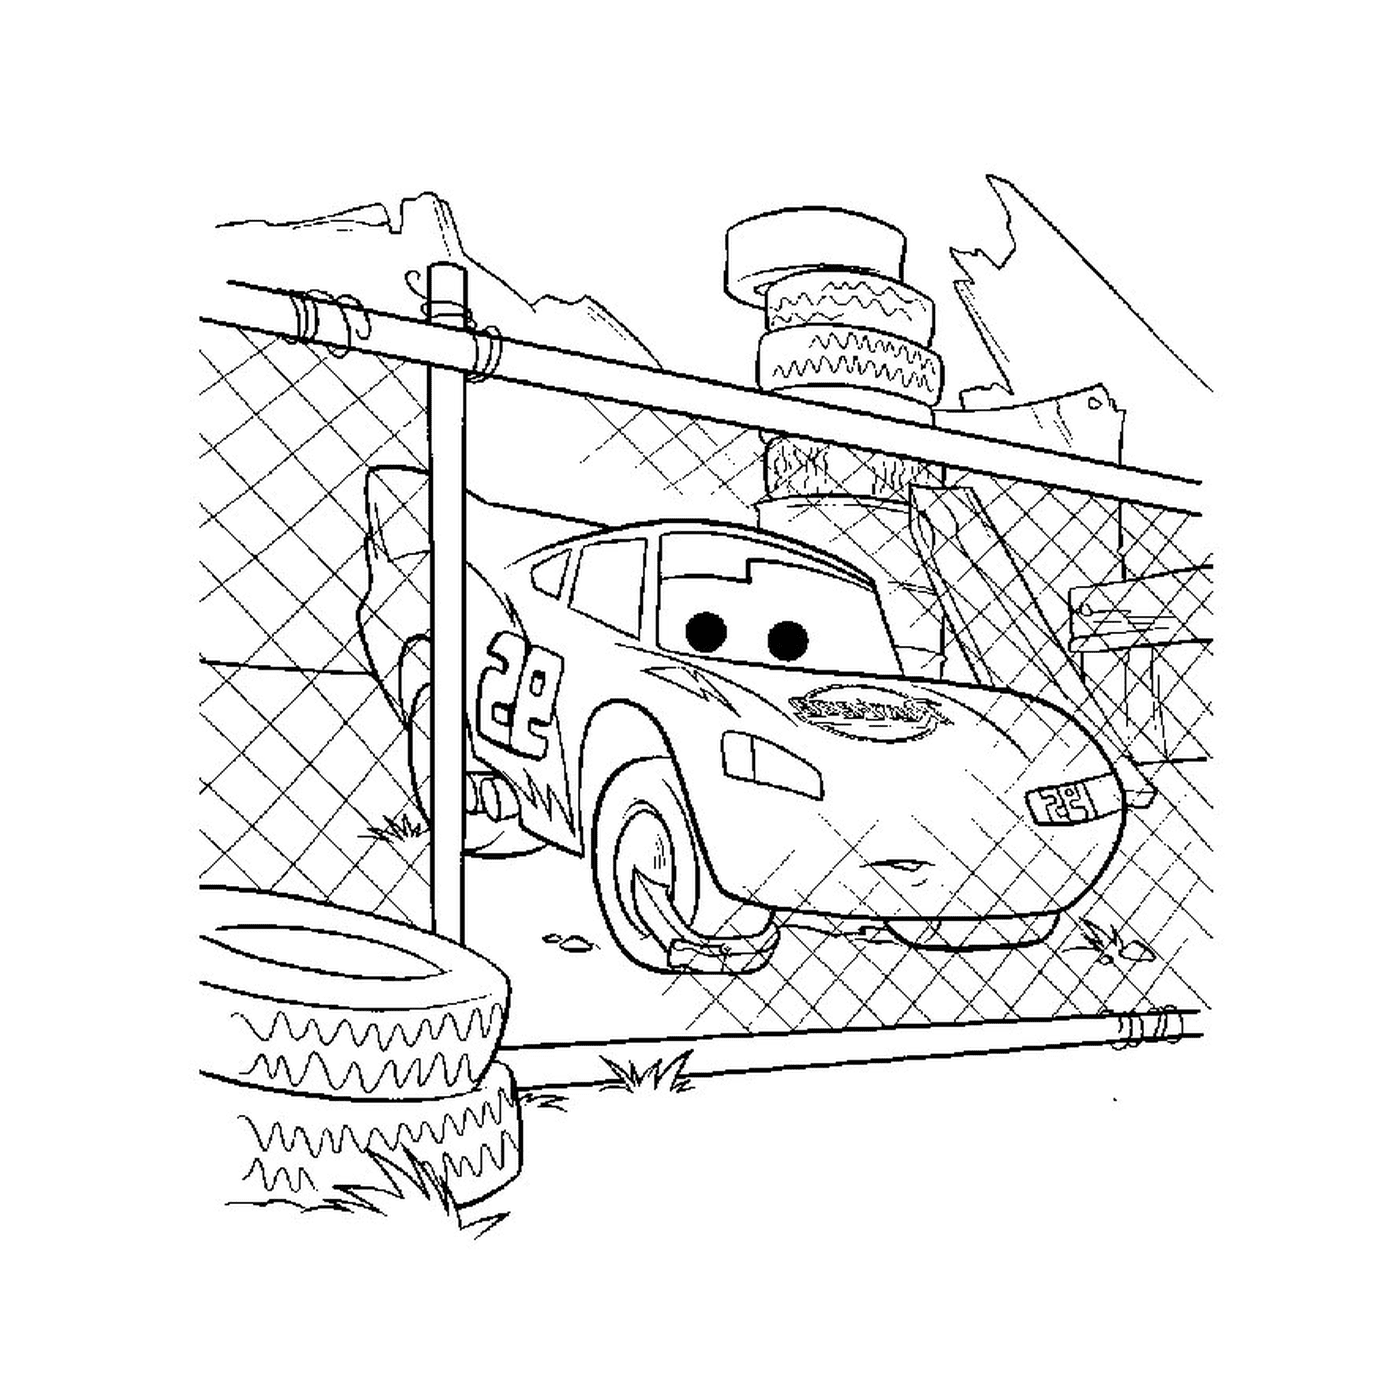   Une voiture dans une zone clôturée 